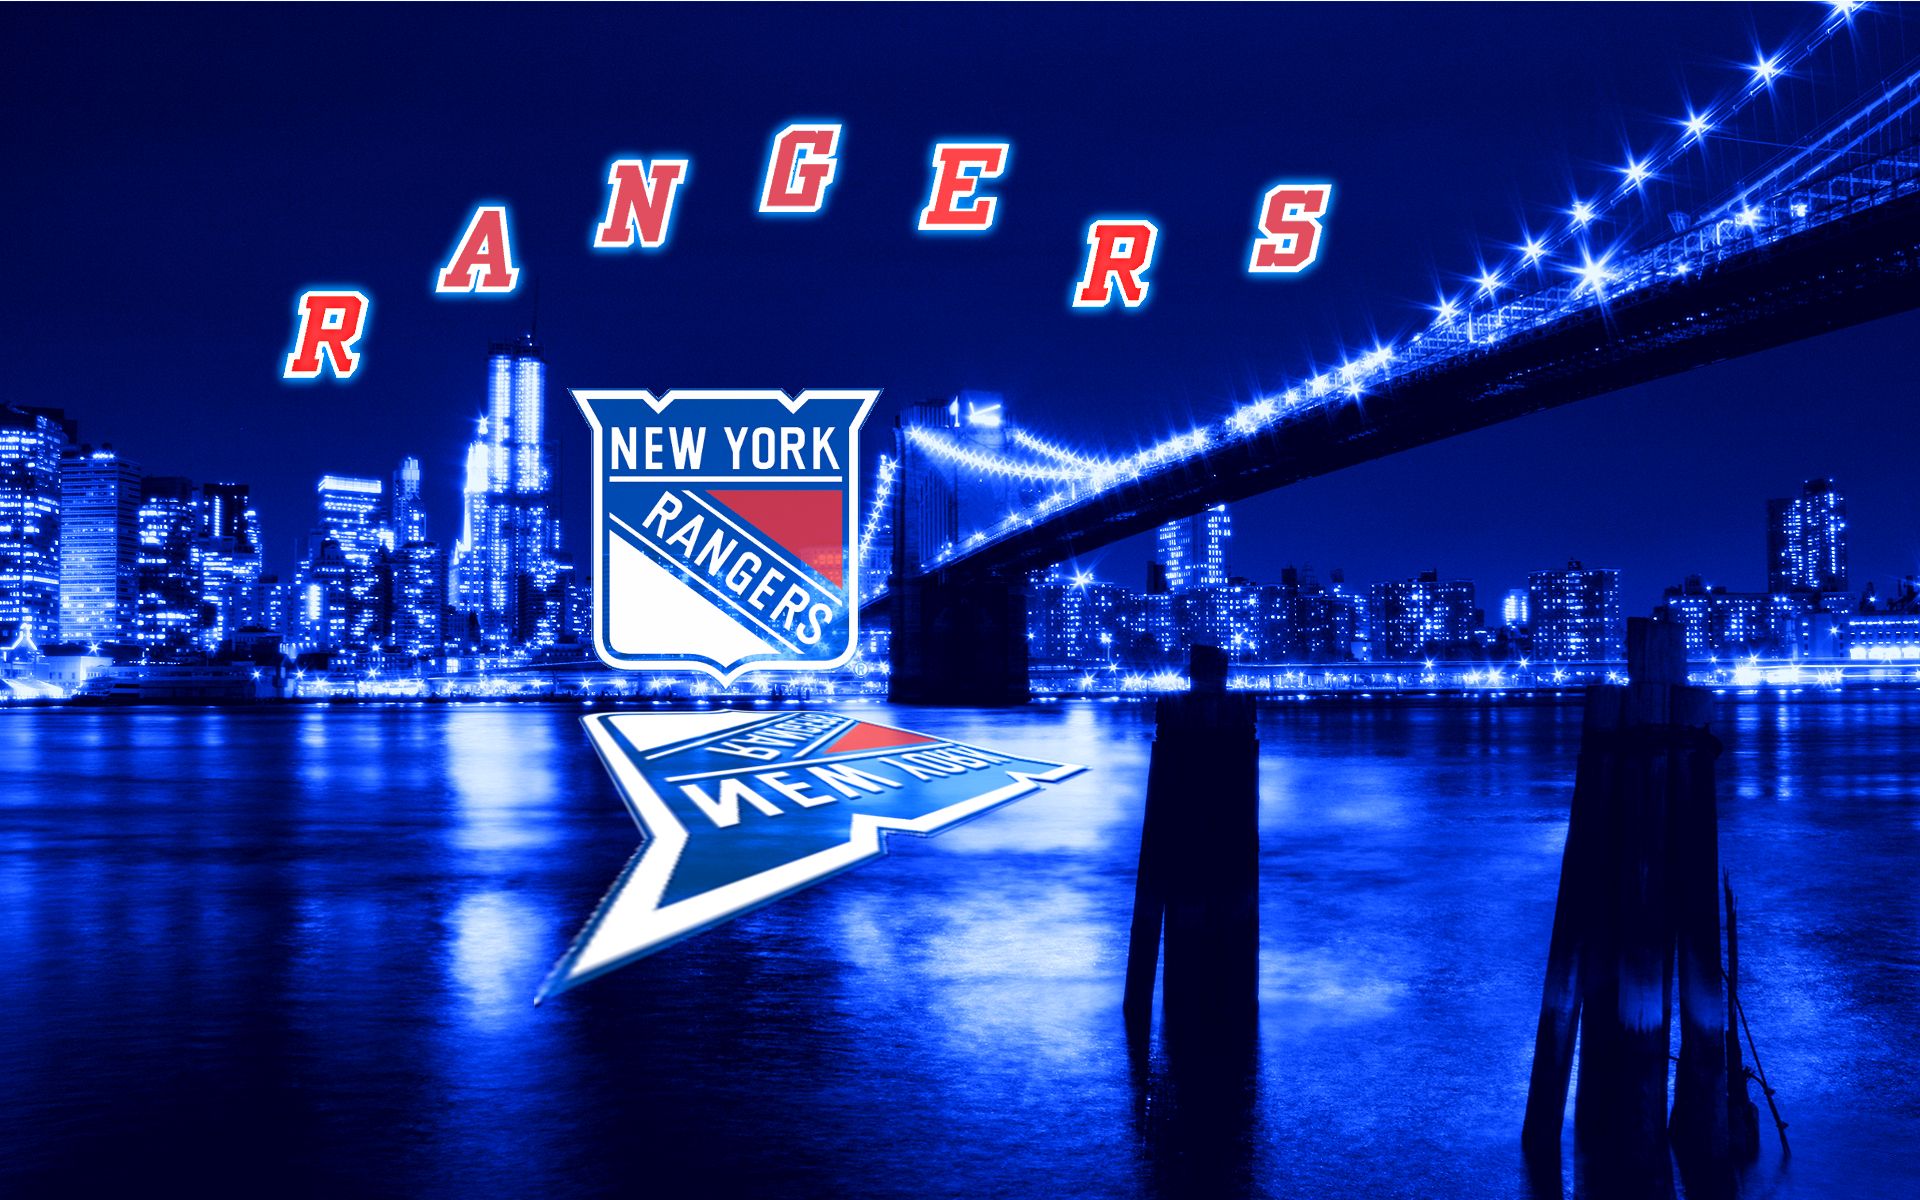 New York Rangers Wallpaper  Nhl wallpaper, New york rangers, Rangers hockey